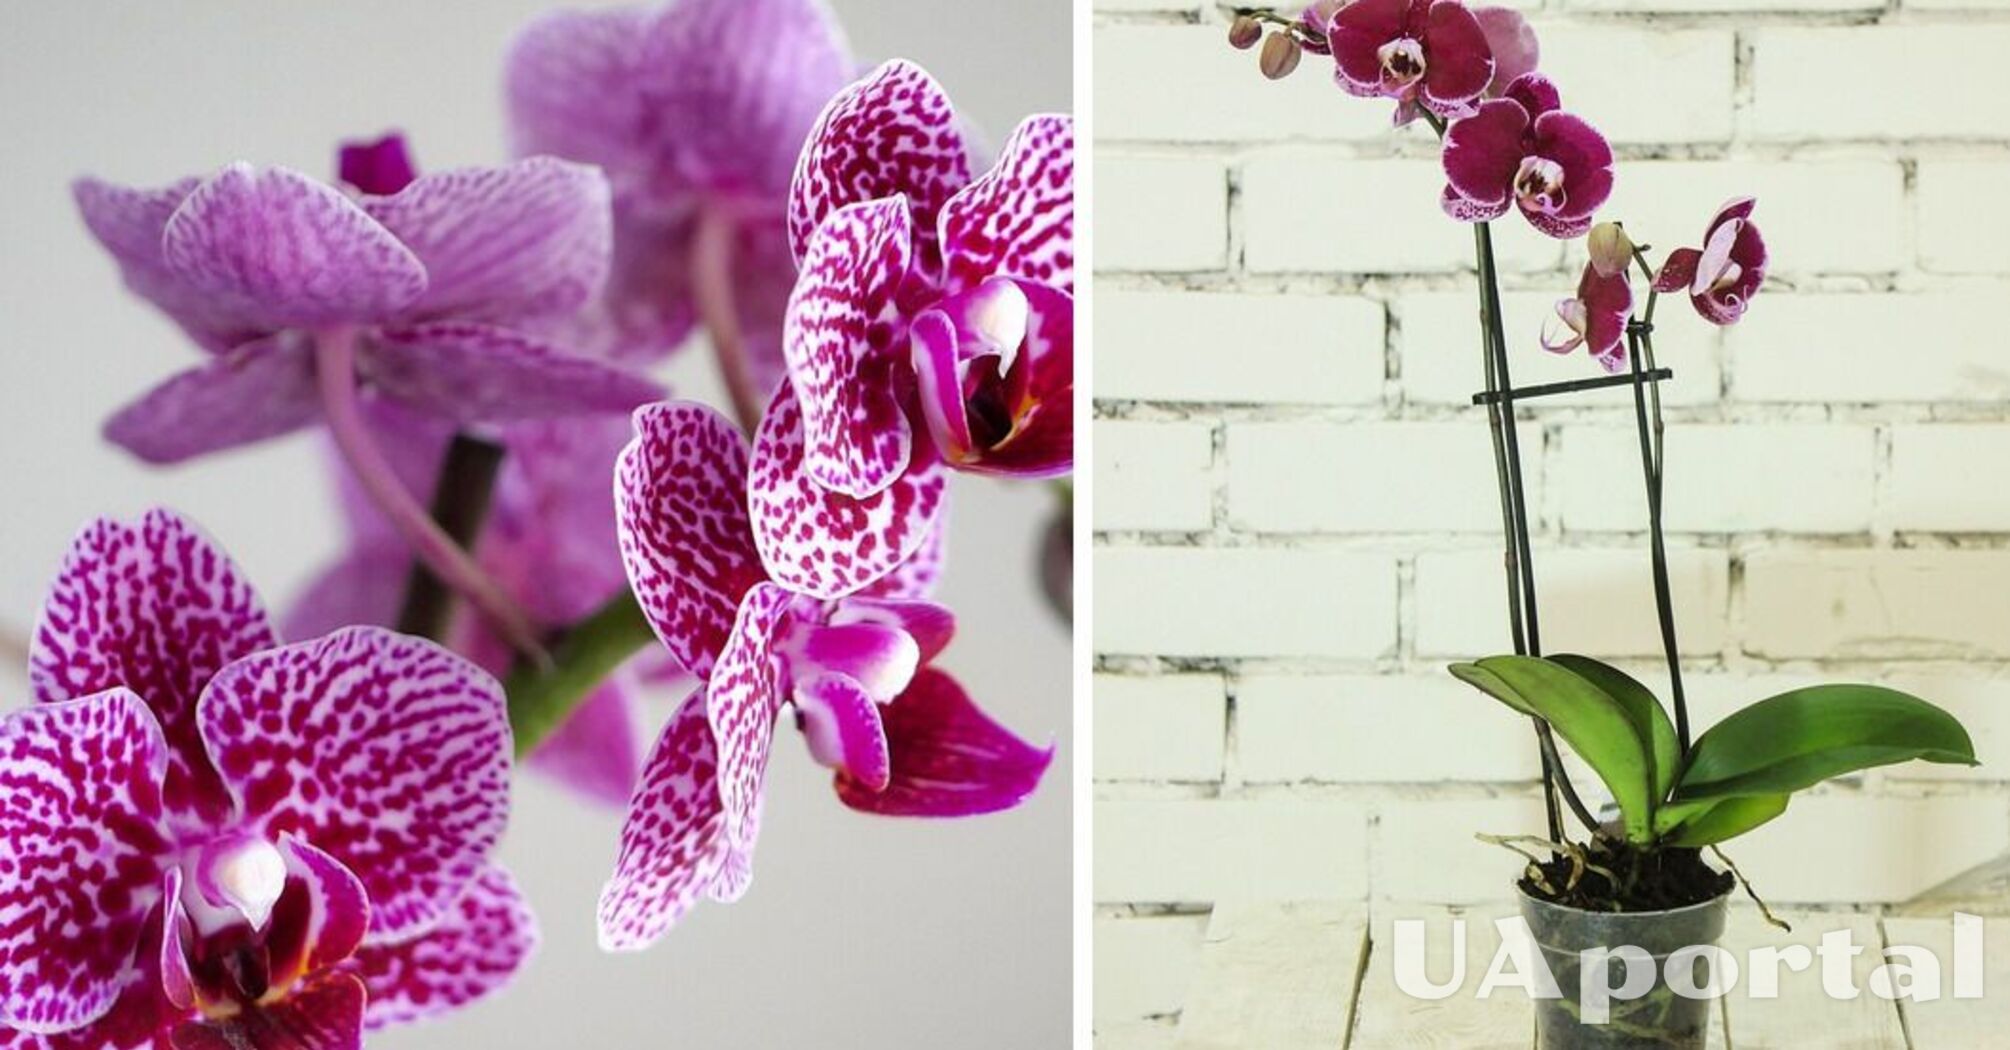 Спеціалісти пояснили, як заохотити орхідею до повторного цвітіння